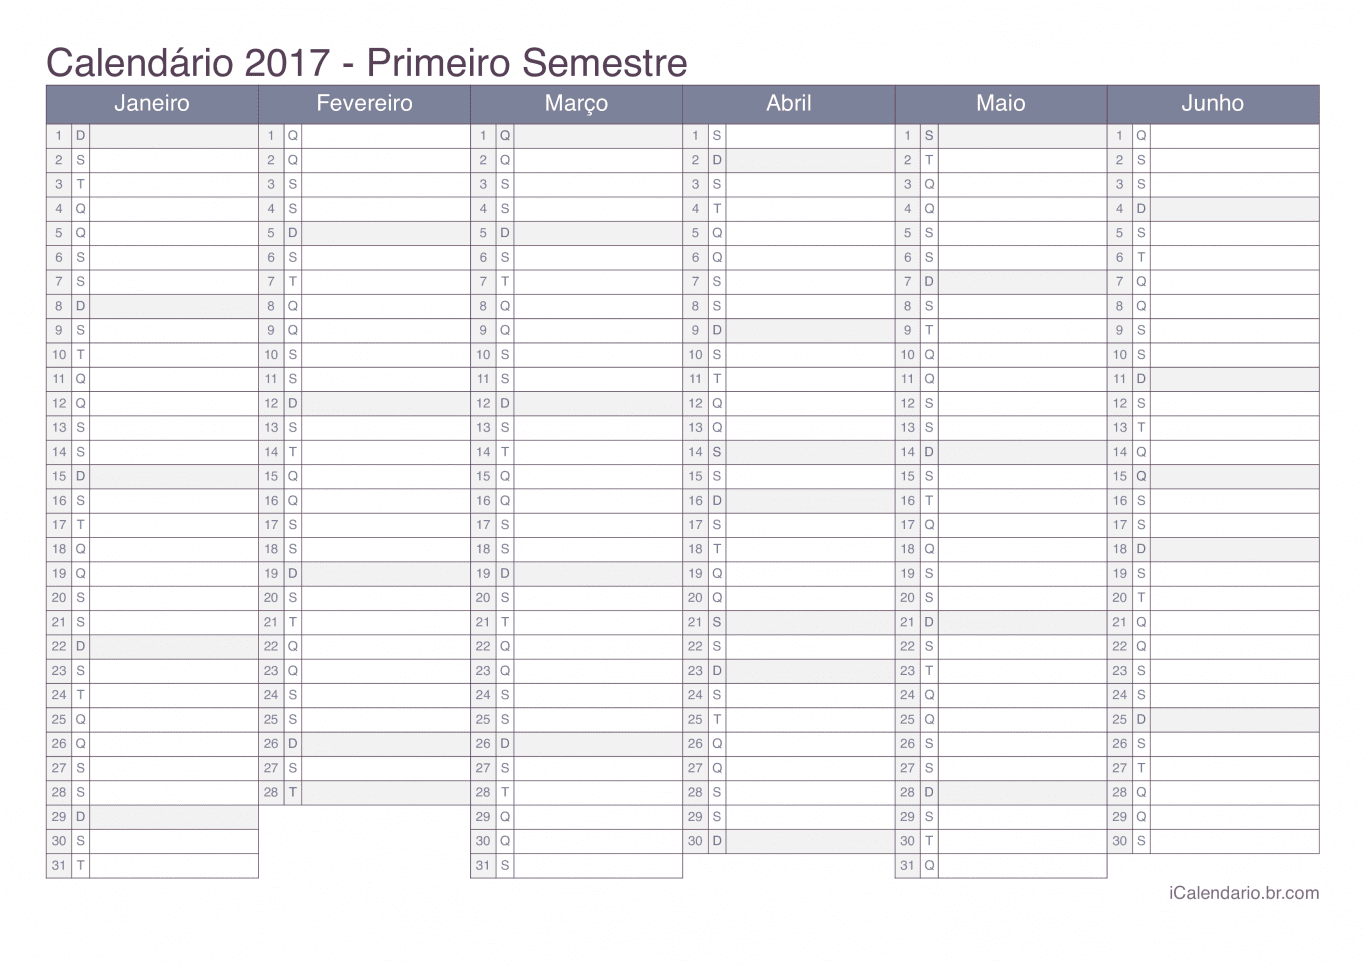 Calendário por semestre 2017 - Office